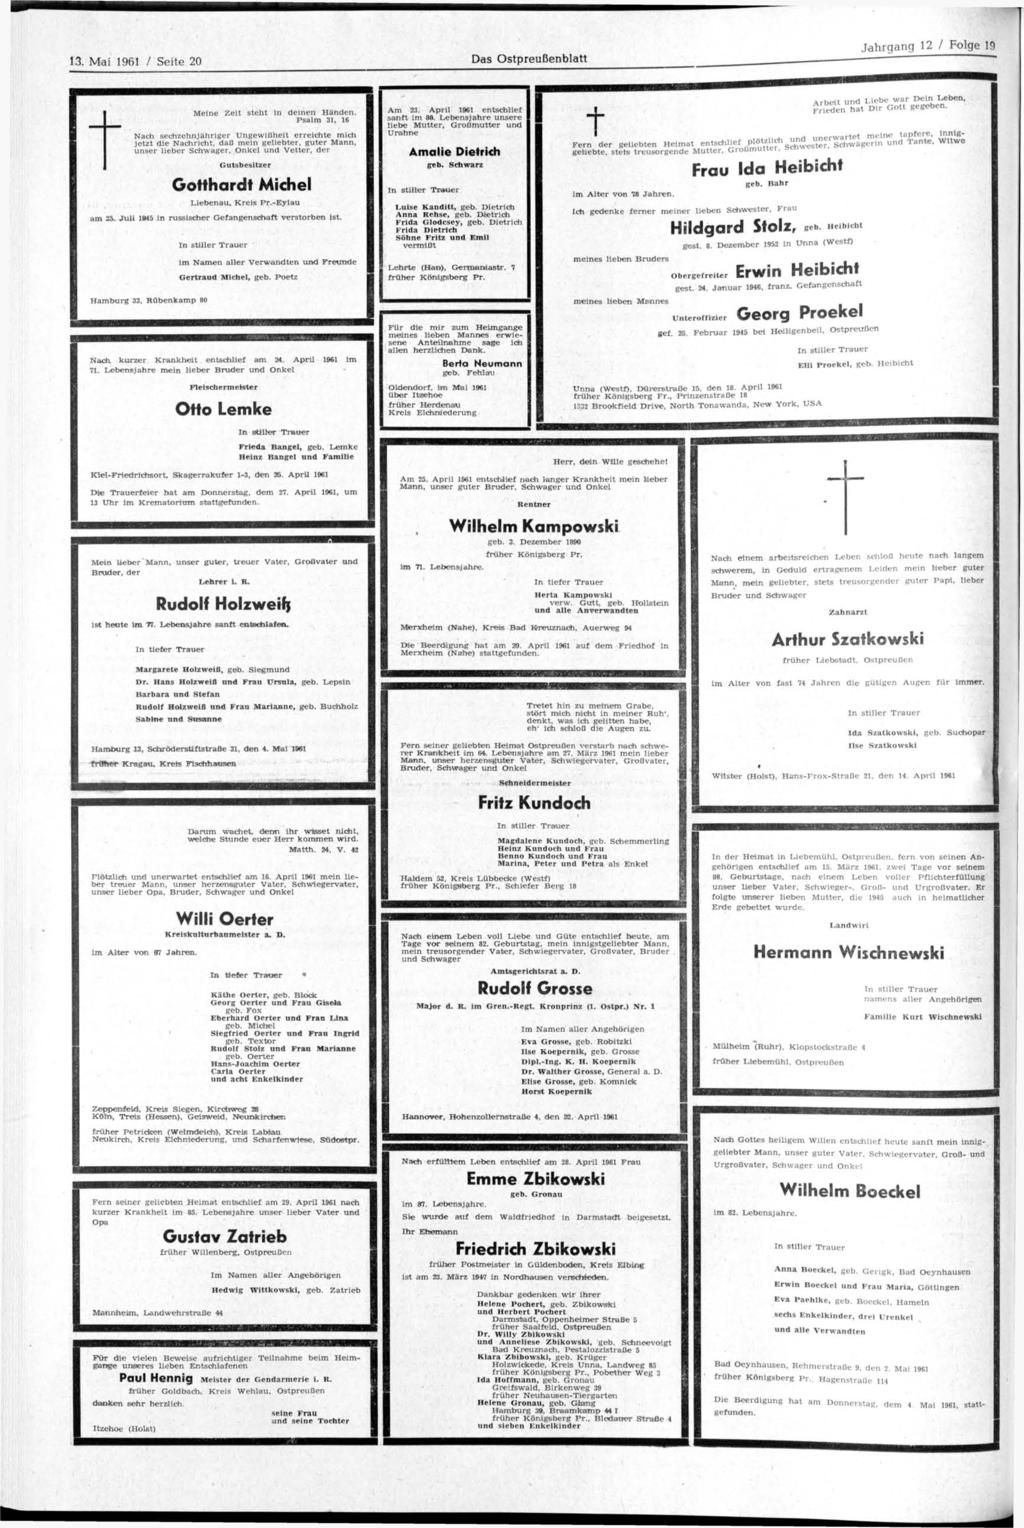 13. Mai 1961 / Seite 20 Das Ostpreußenblatt Jahrgang 12 / Folge 19 t Meine Zeit steht in deinen Händen.